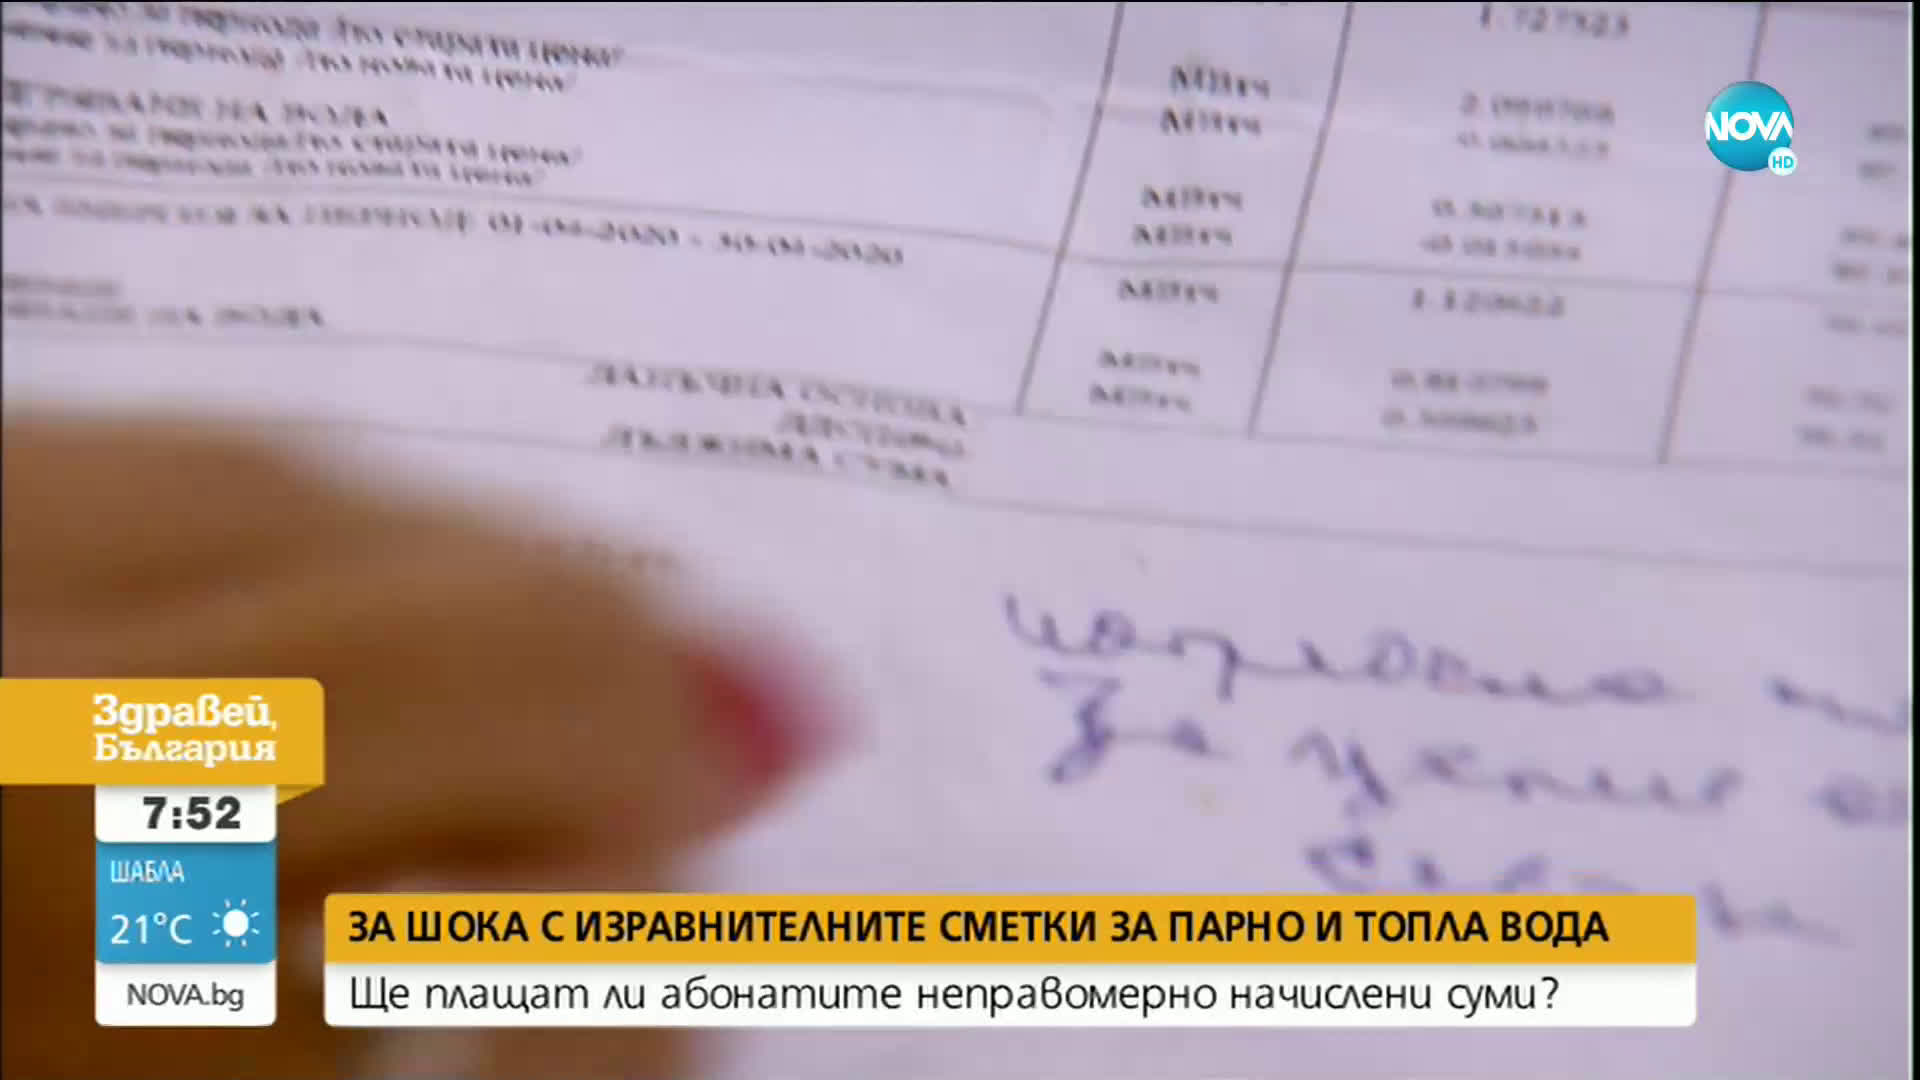 Ковачева: Информацията от „Топлофикация” във фактурите е подвеждаща